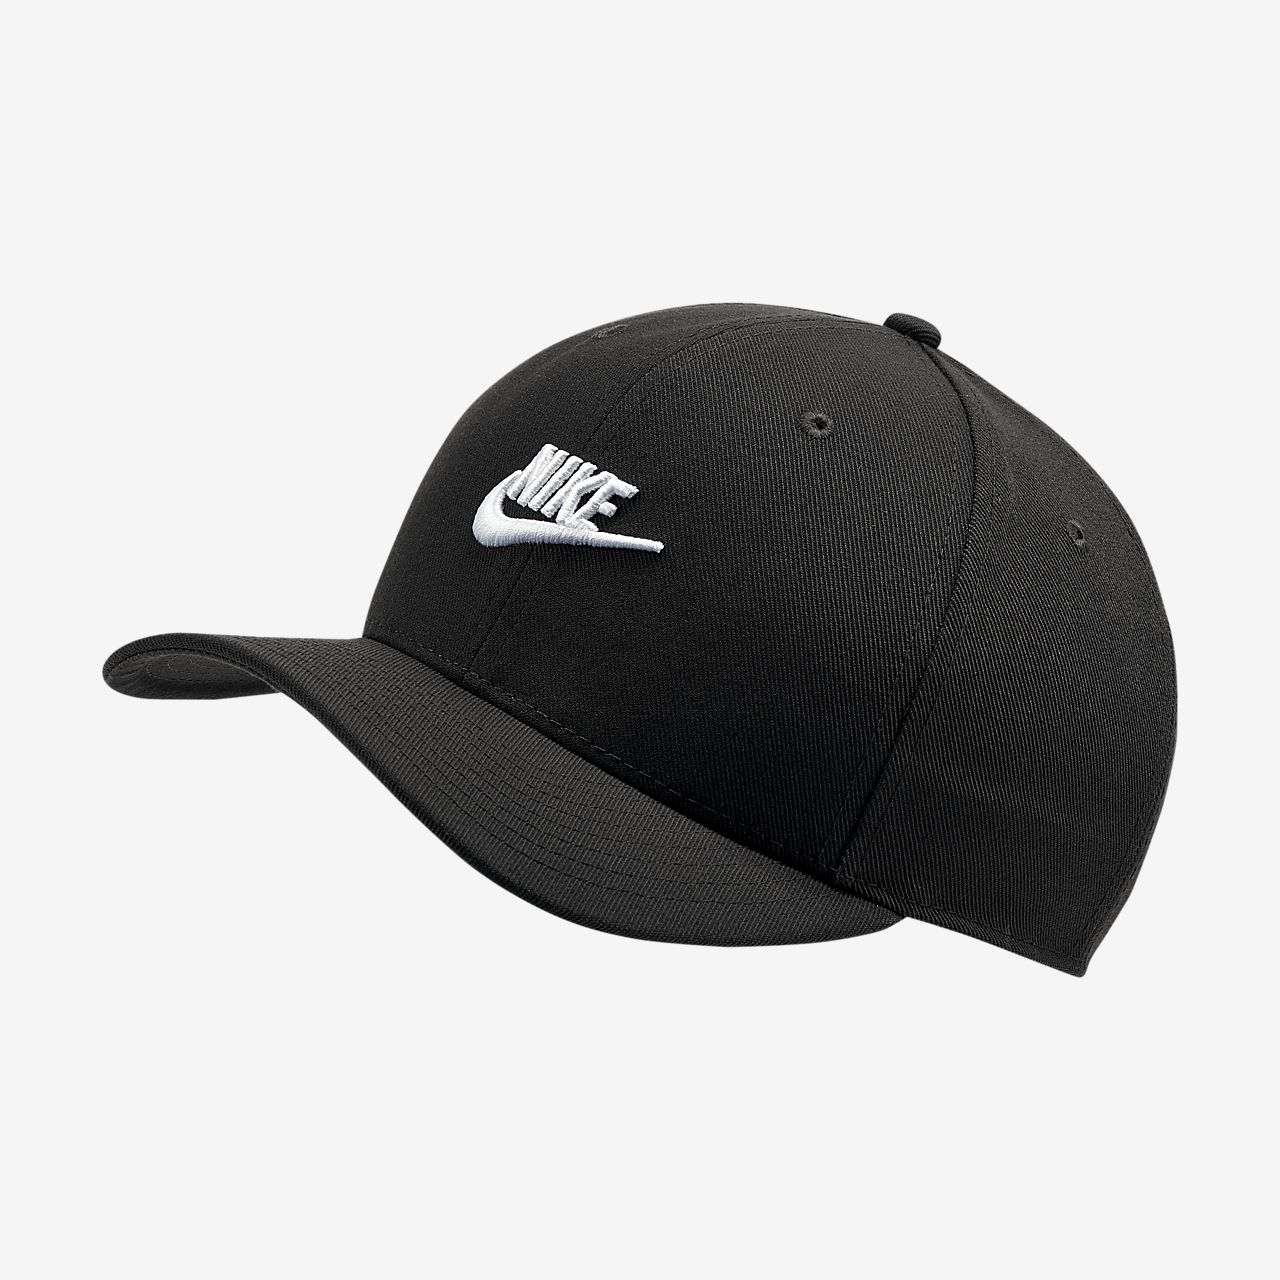 Nike sportswear classic 99 cap – Bovenmen Shop